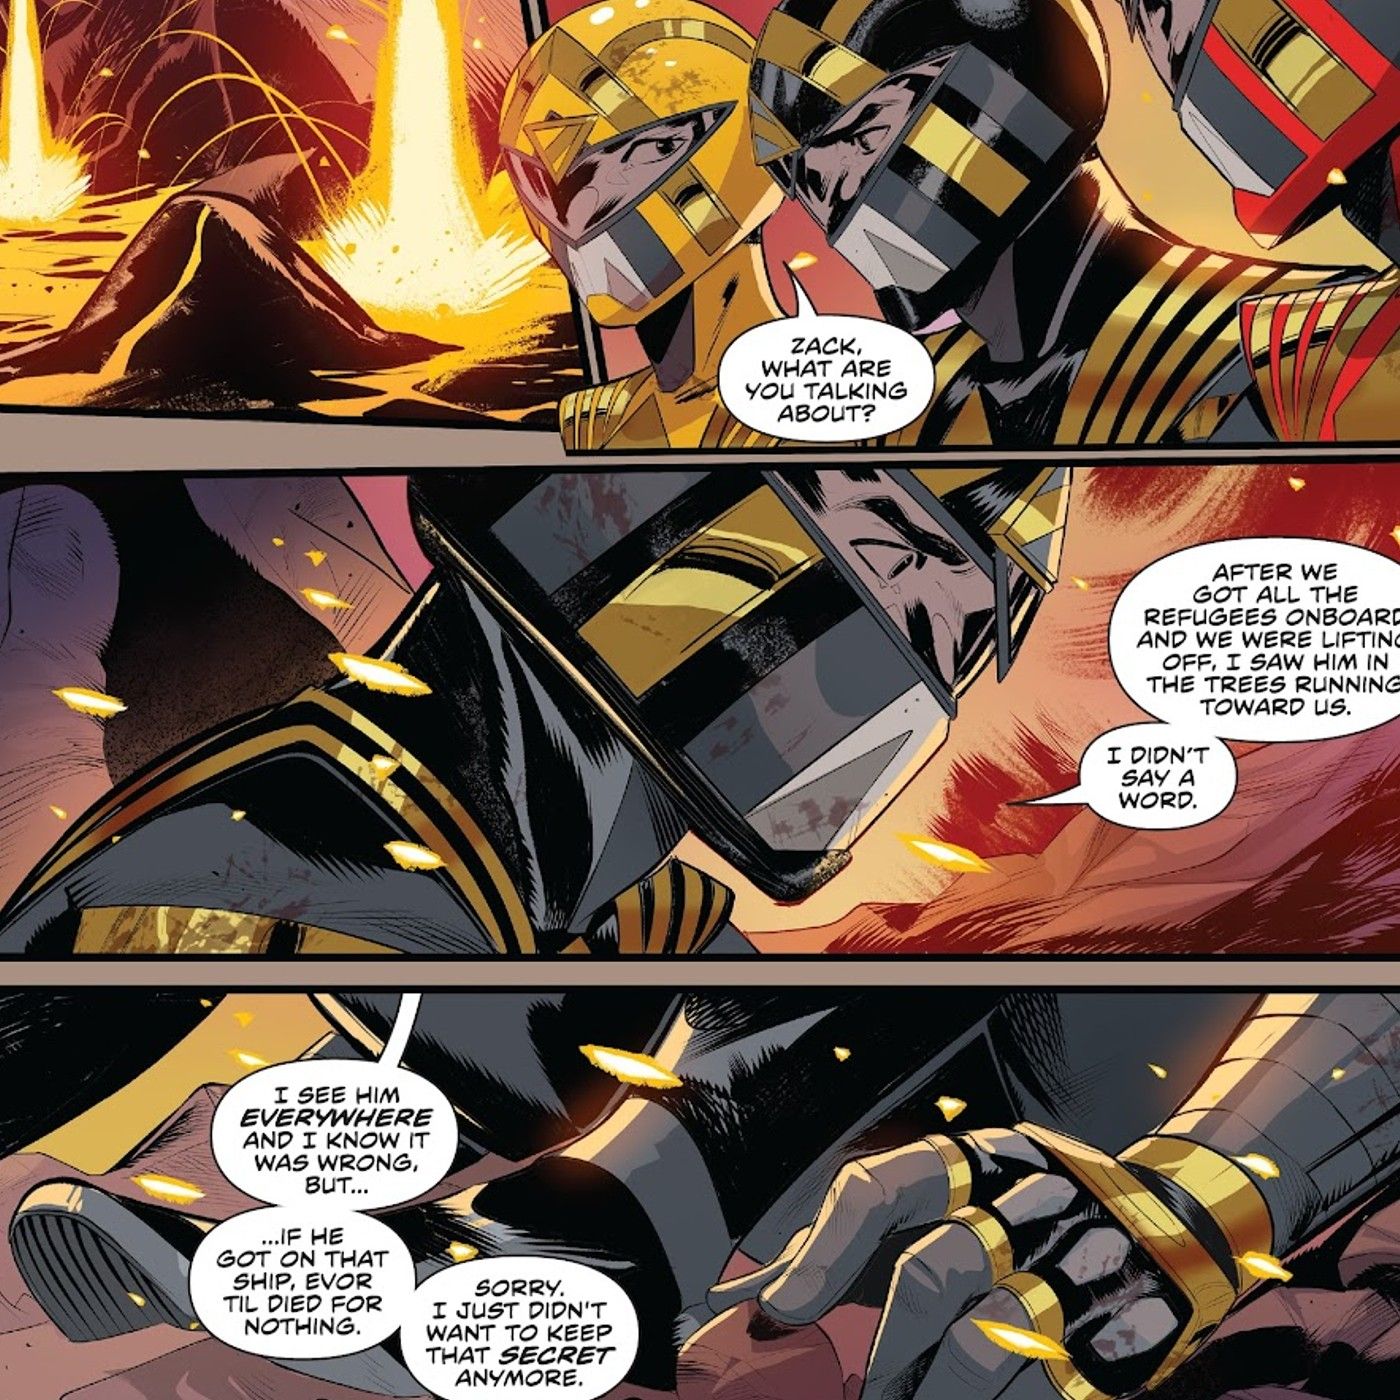 Power Rangers #12, former Mighty Morphin Power Rangers Black Ranger Zack Taylor tells Omega Rangers his secret